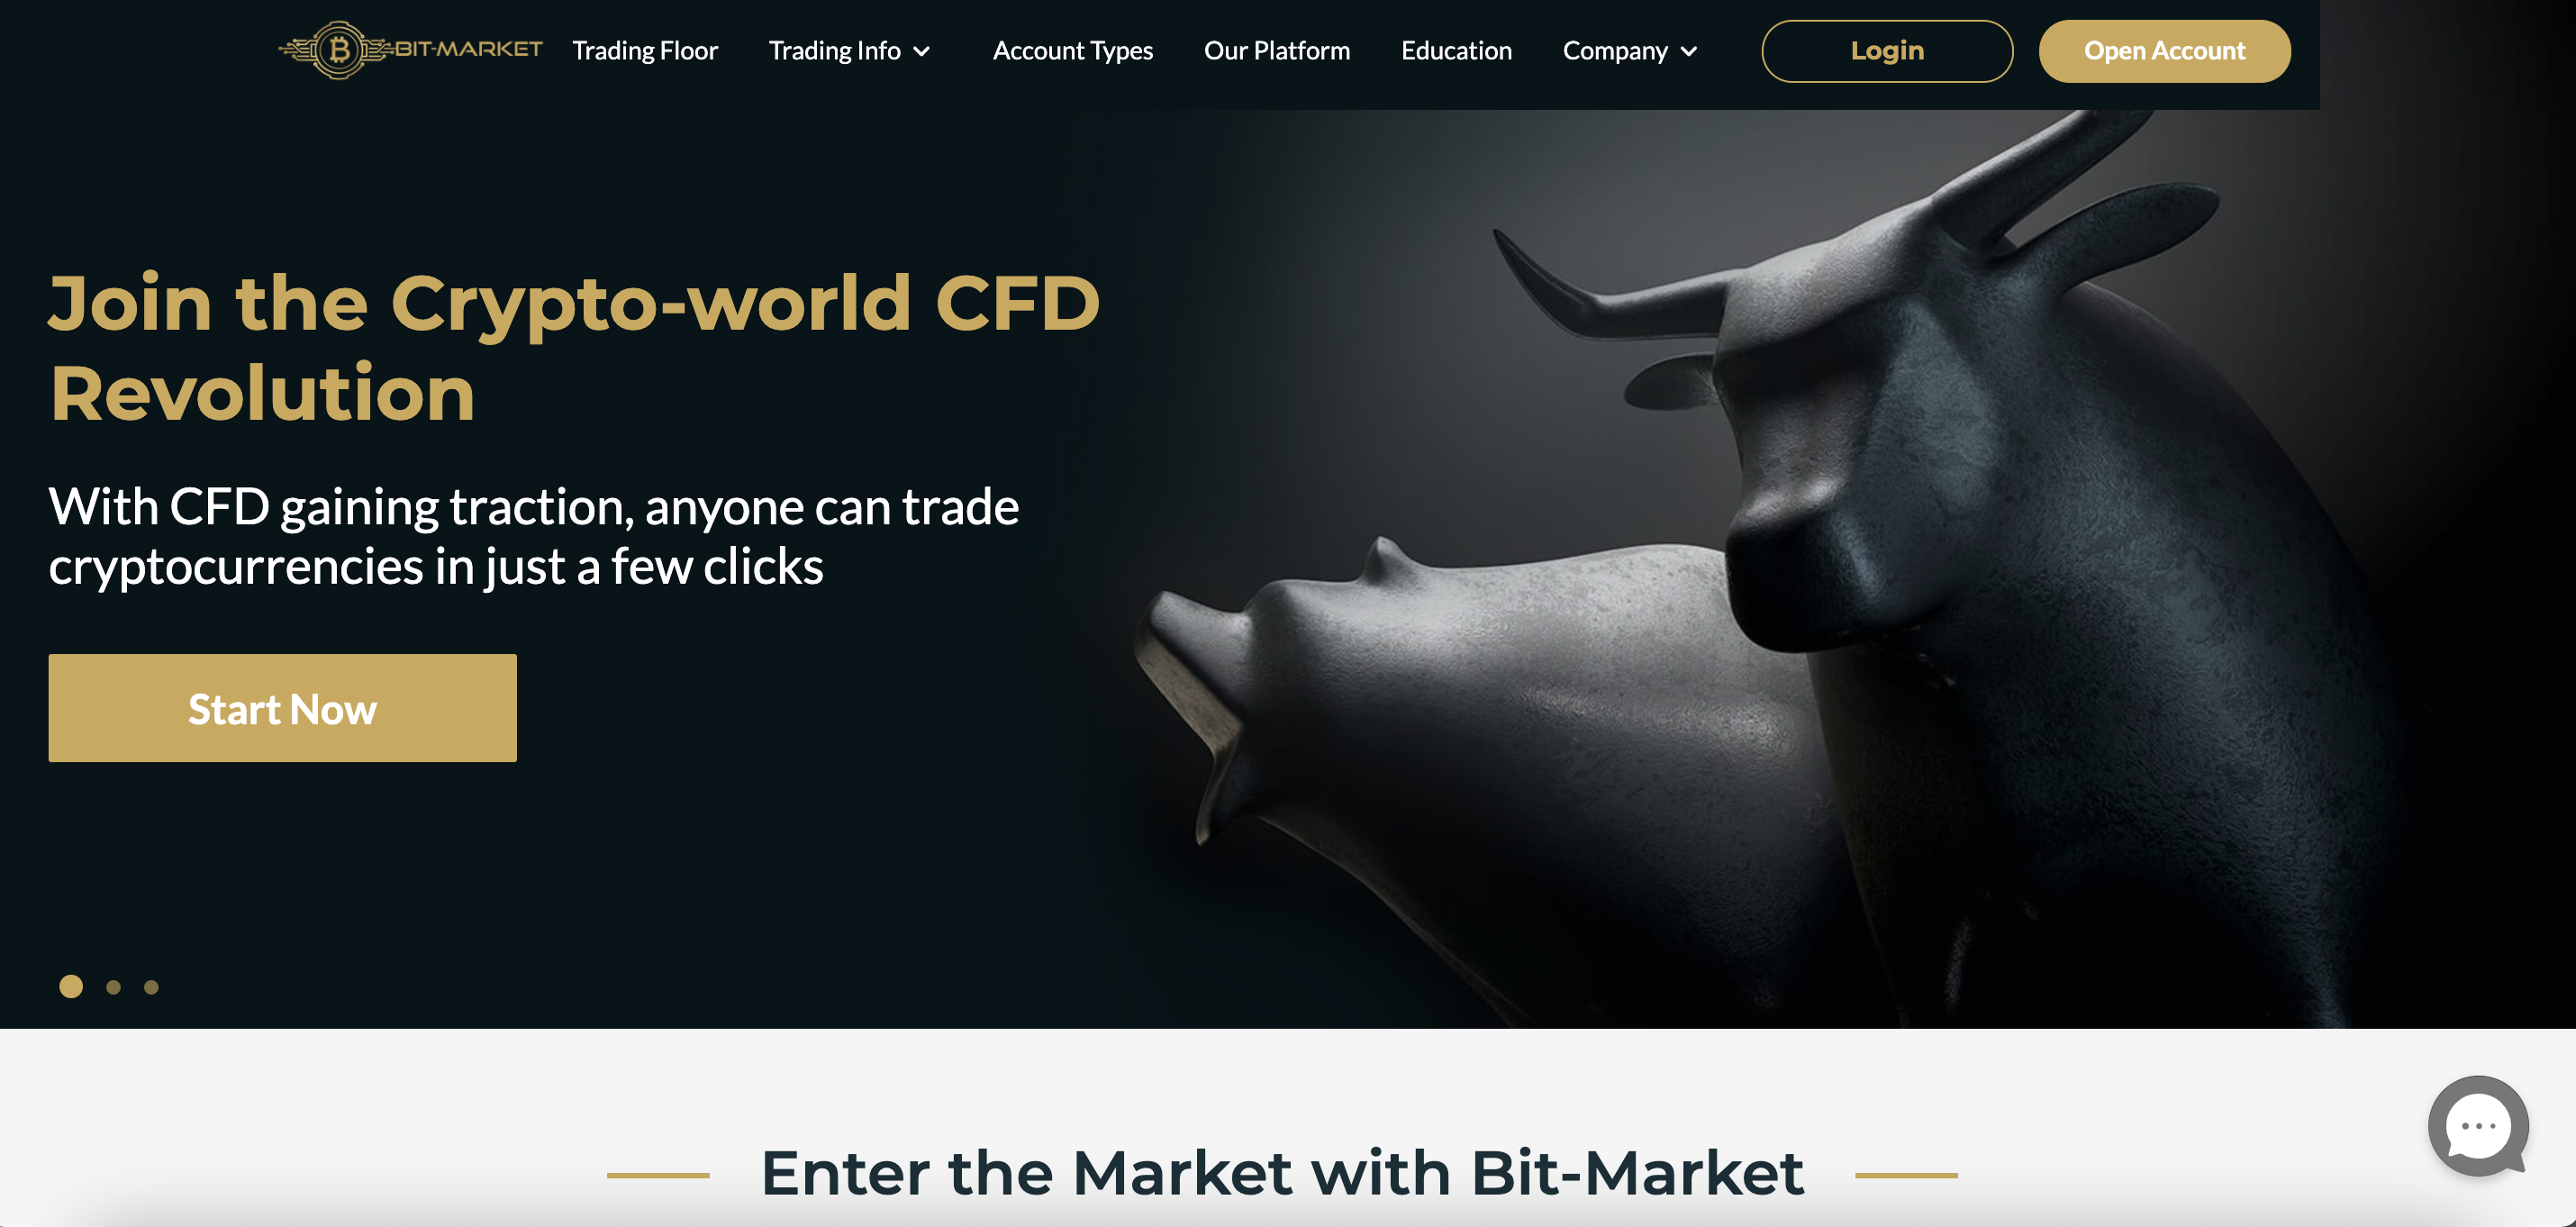 Bit-Market website